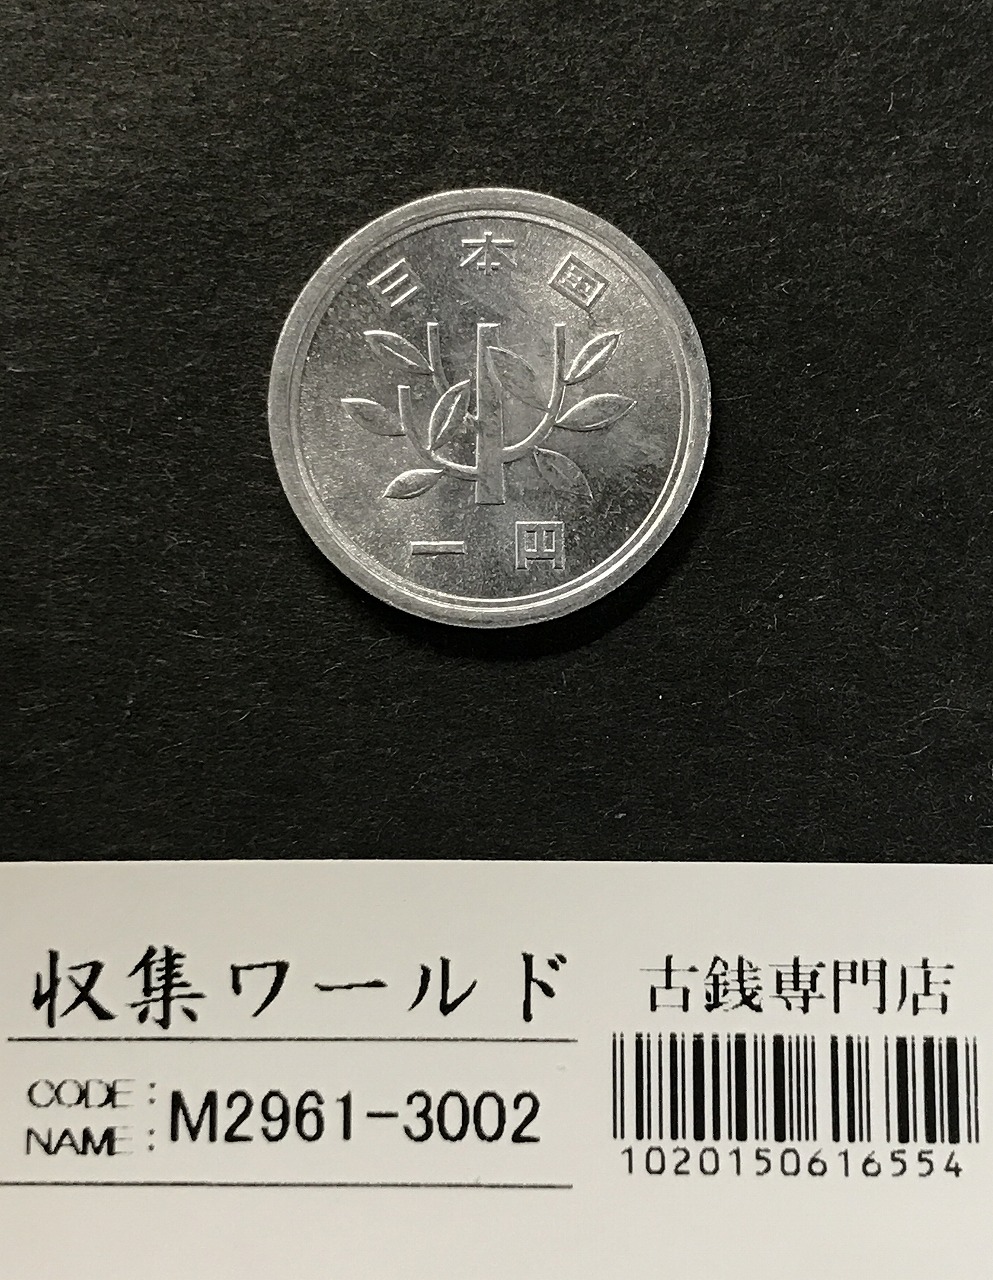 1円アルミ貨 (若木) 1957(S32)年銘 準特年 ロール出し 未使用極美